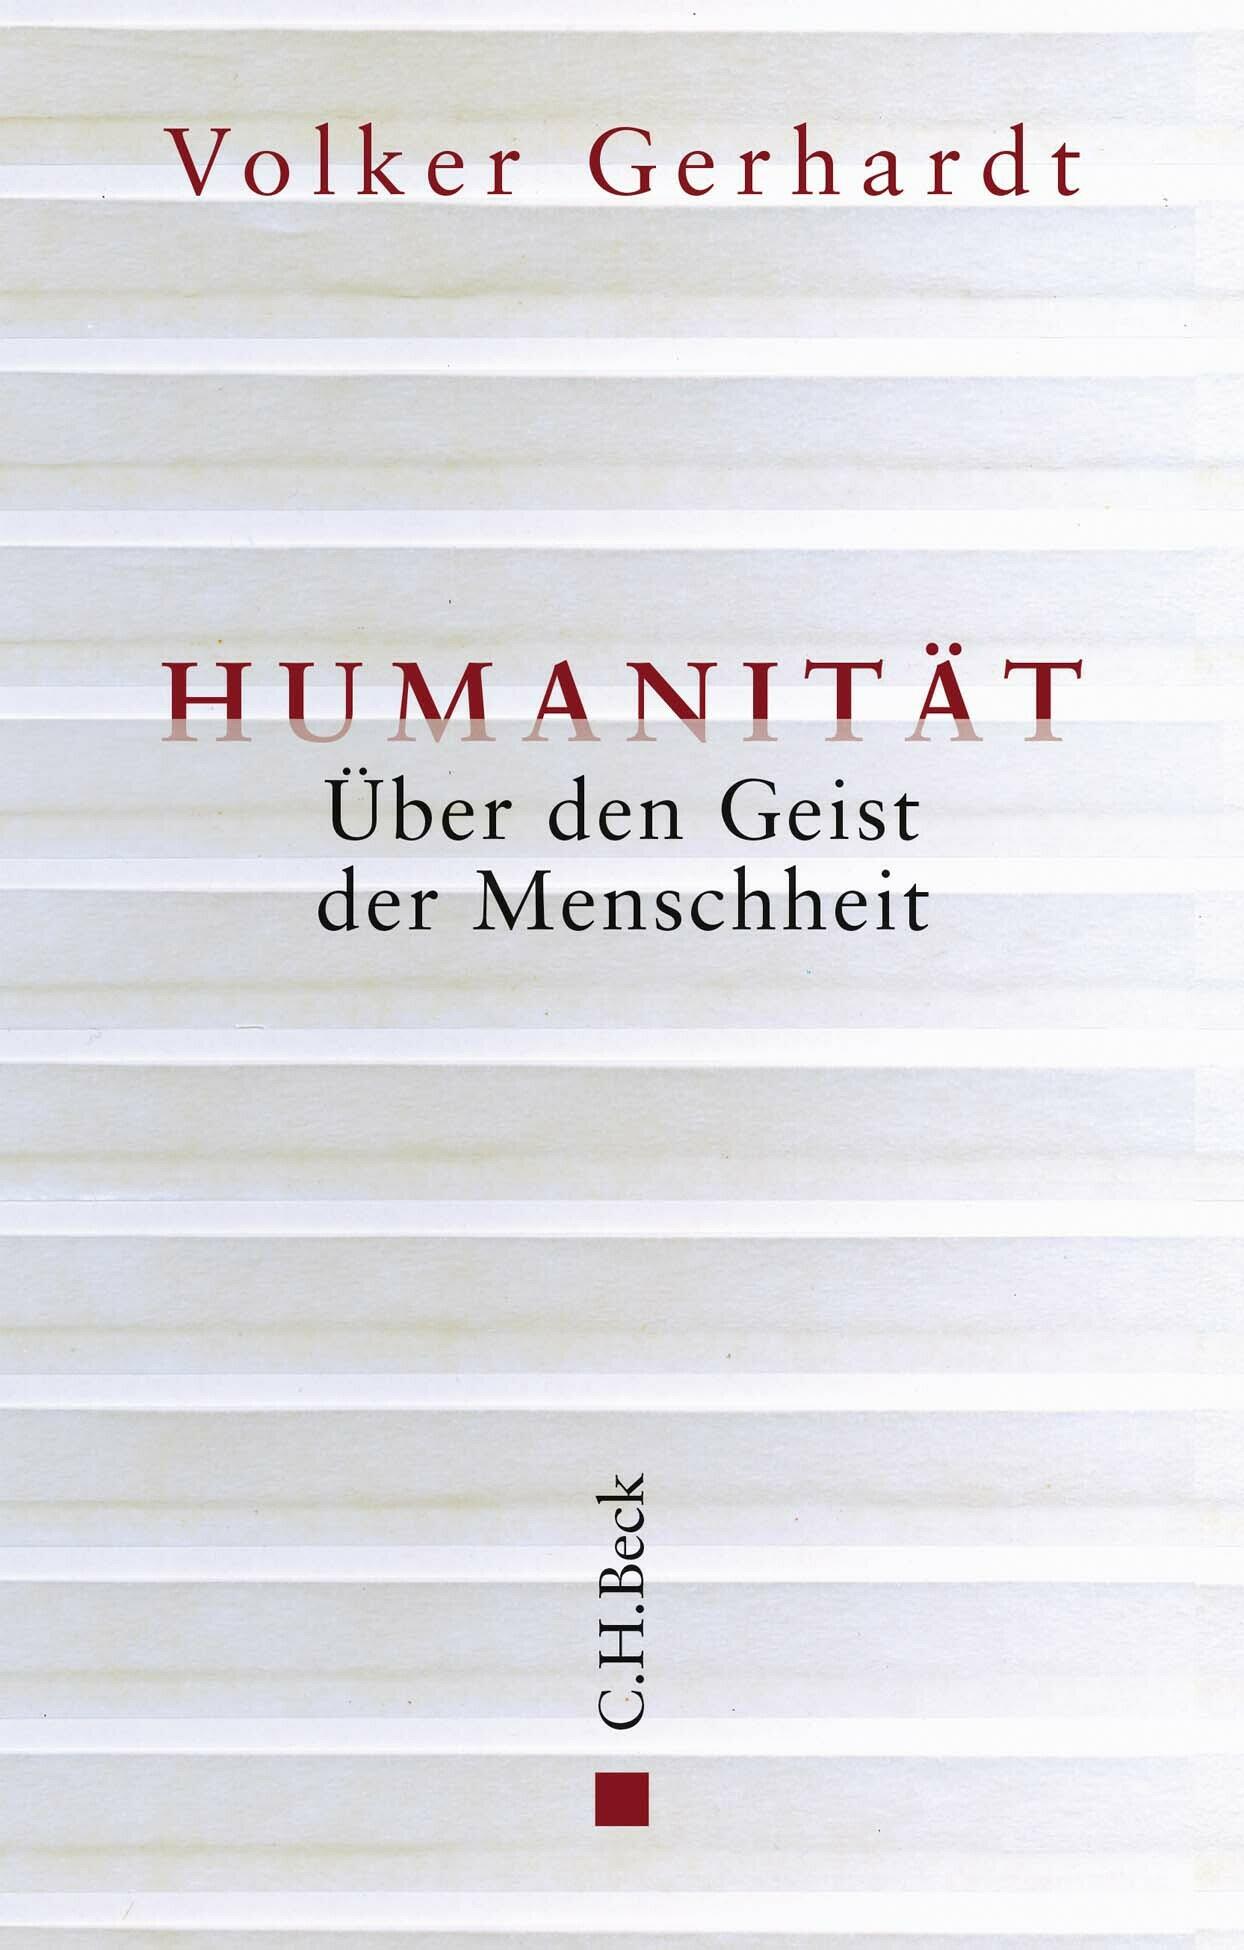 humanitaet volker gerhardt gesellschaft gesellschaftsentwicklung psychologie philosophie soziologie